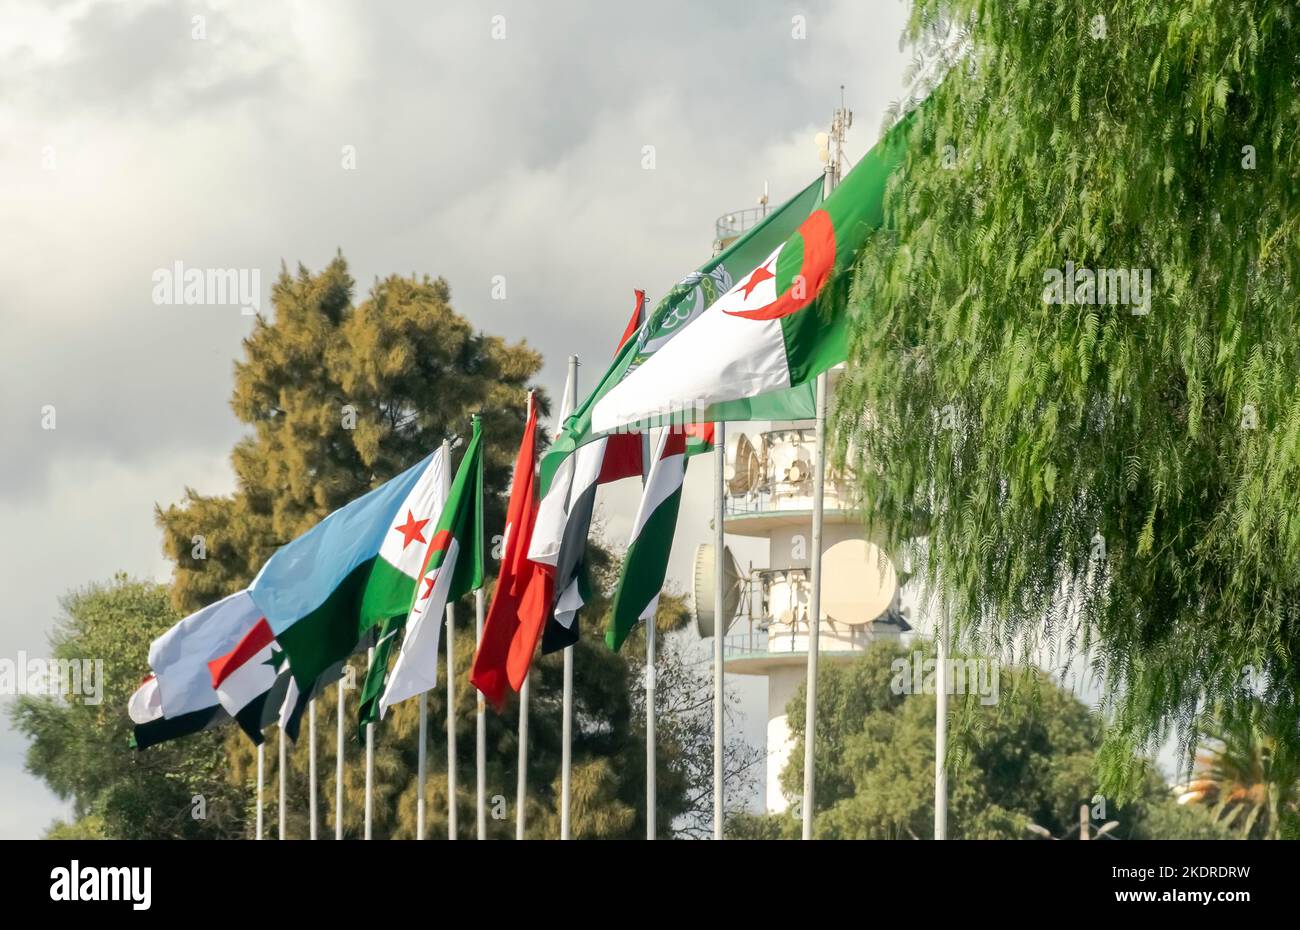 Drapeaux de l'Algérie, de la Ligue arabe et des pays arabes drapeau agitant dans le vent en dehors de la ville d'Alger avec des poteaux de drapeaux sous un ciel bleu nuageux et des arbres. Banque D'Images